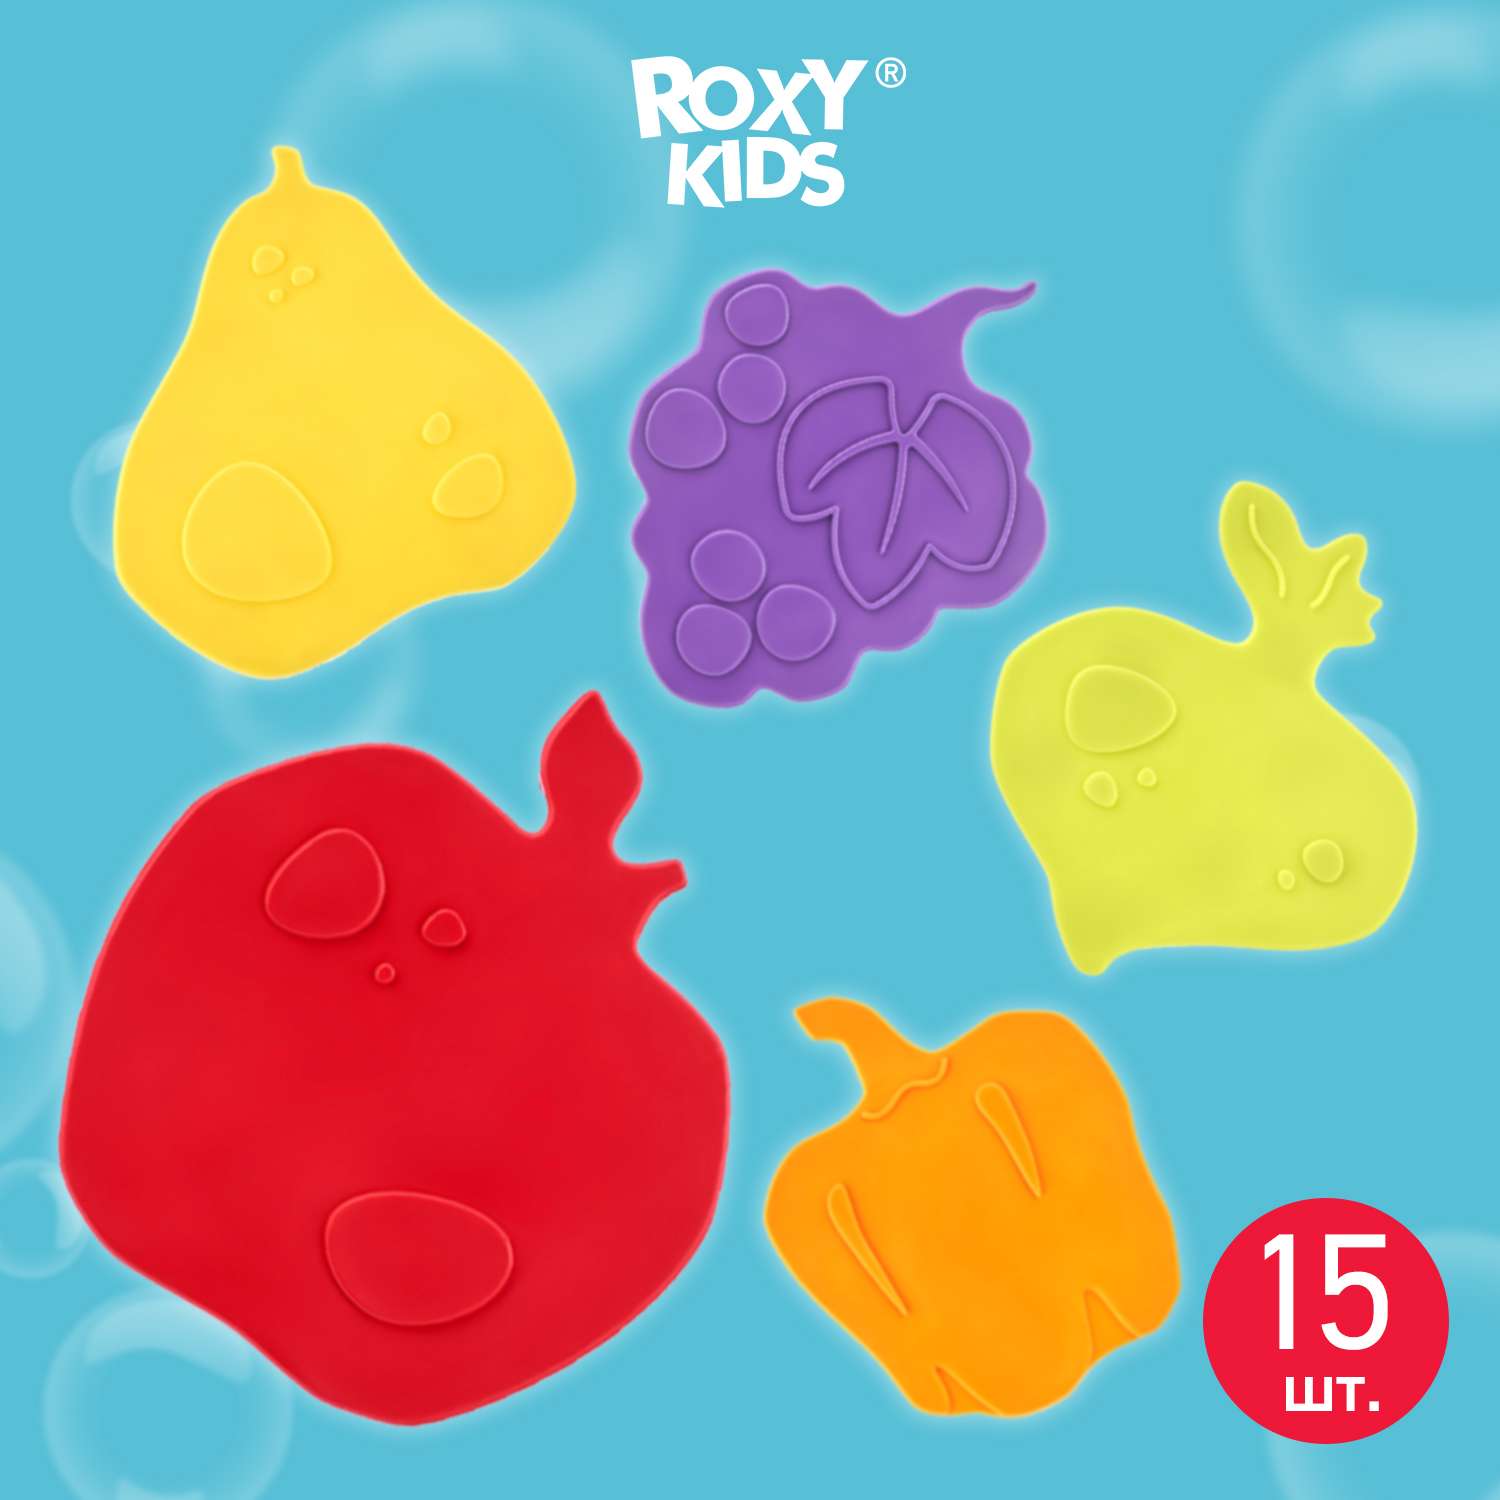 Мини-коврики детские ROXY-KIDS для ванной противоскользящие fresh mix 15 шт цвета в ассортименте - фото 1